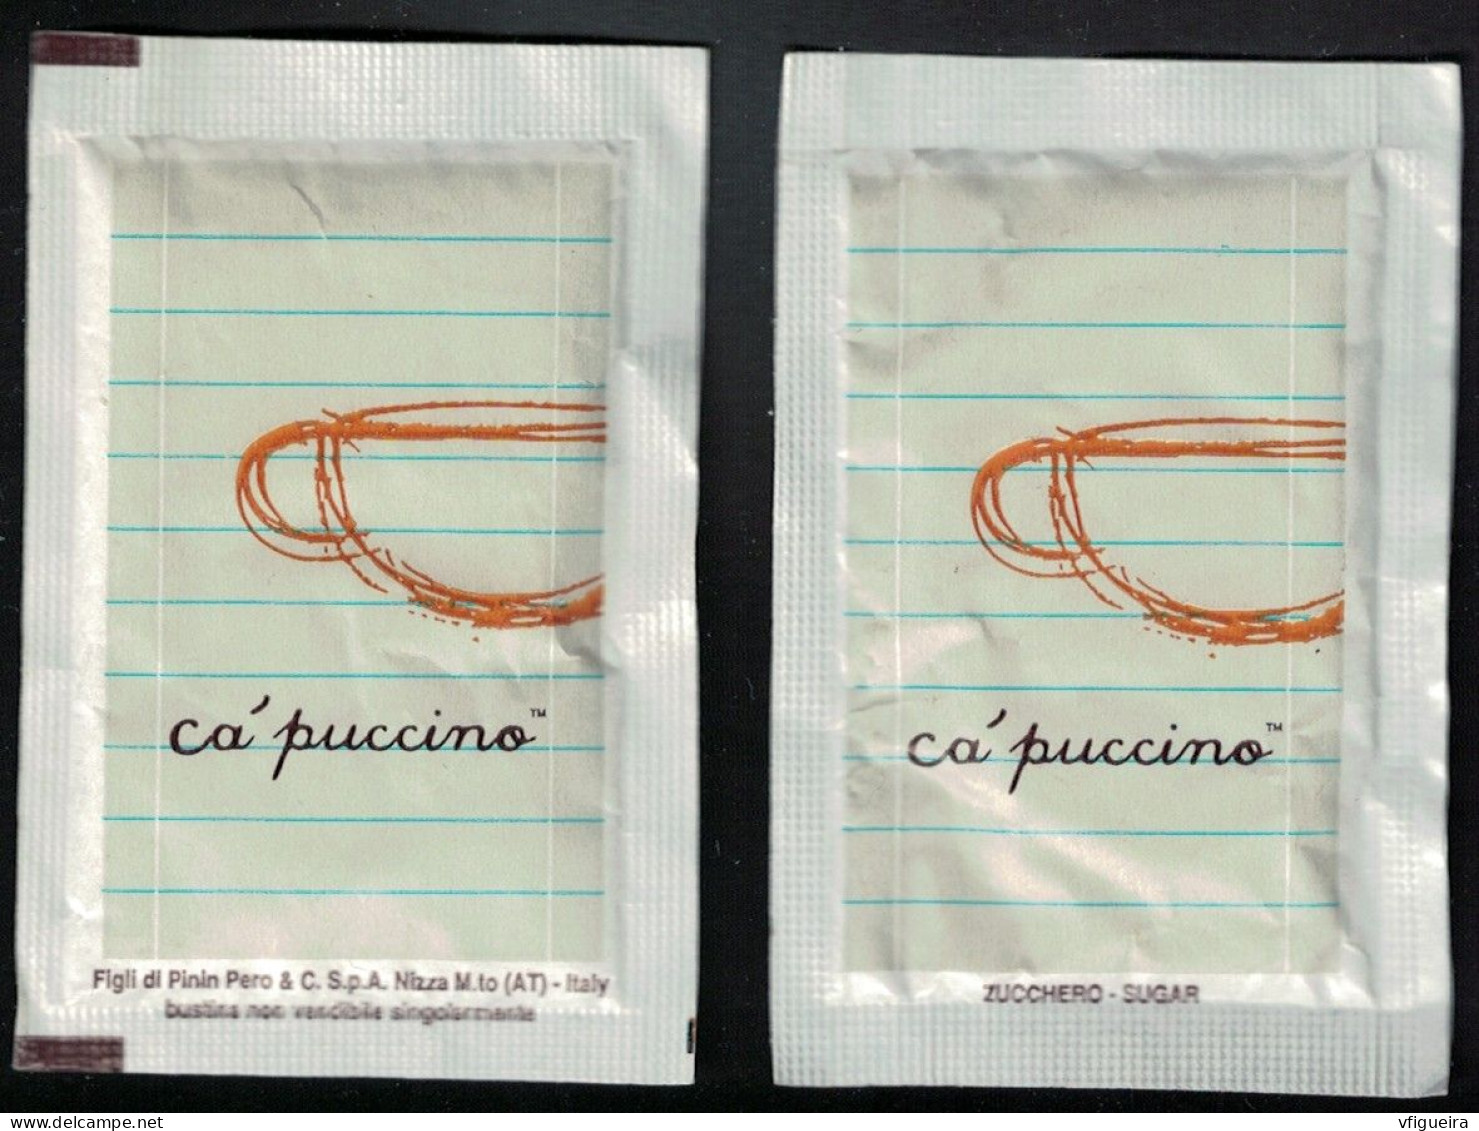 Italie Sachet Sucre Sugar Bag Capuccino Figli Di Pinin Pero White Blanc - Suiker